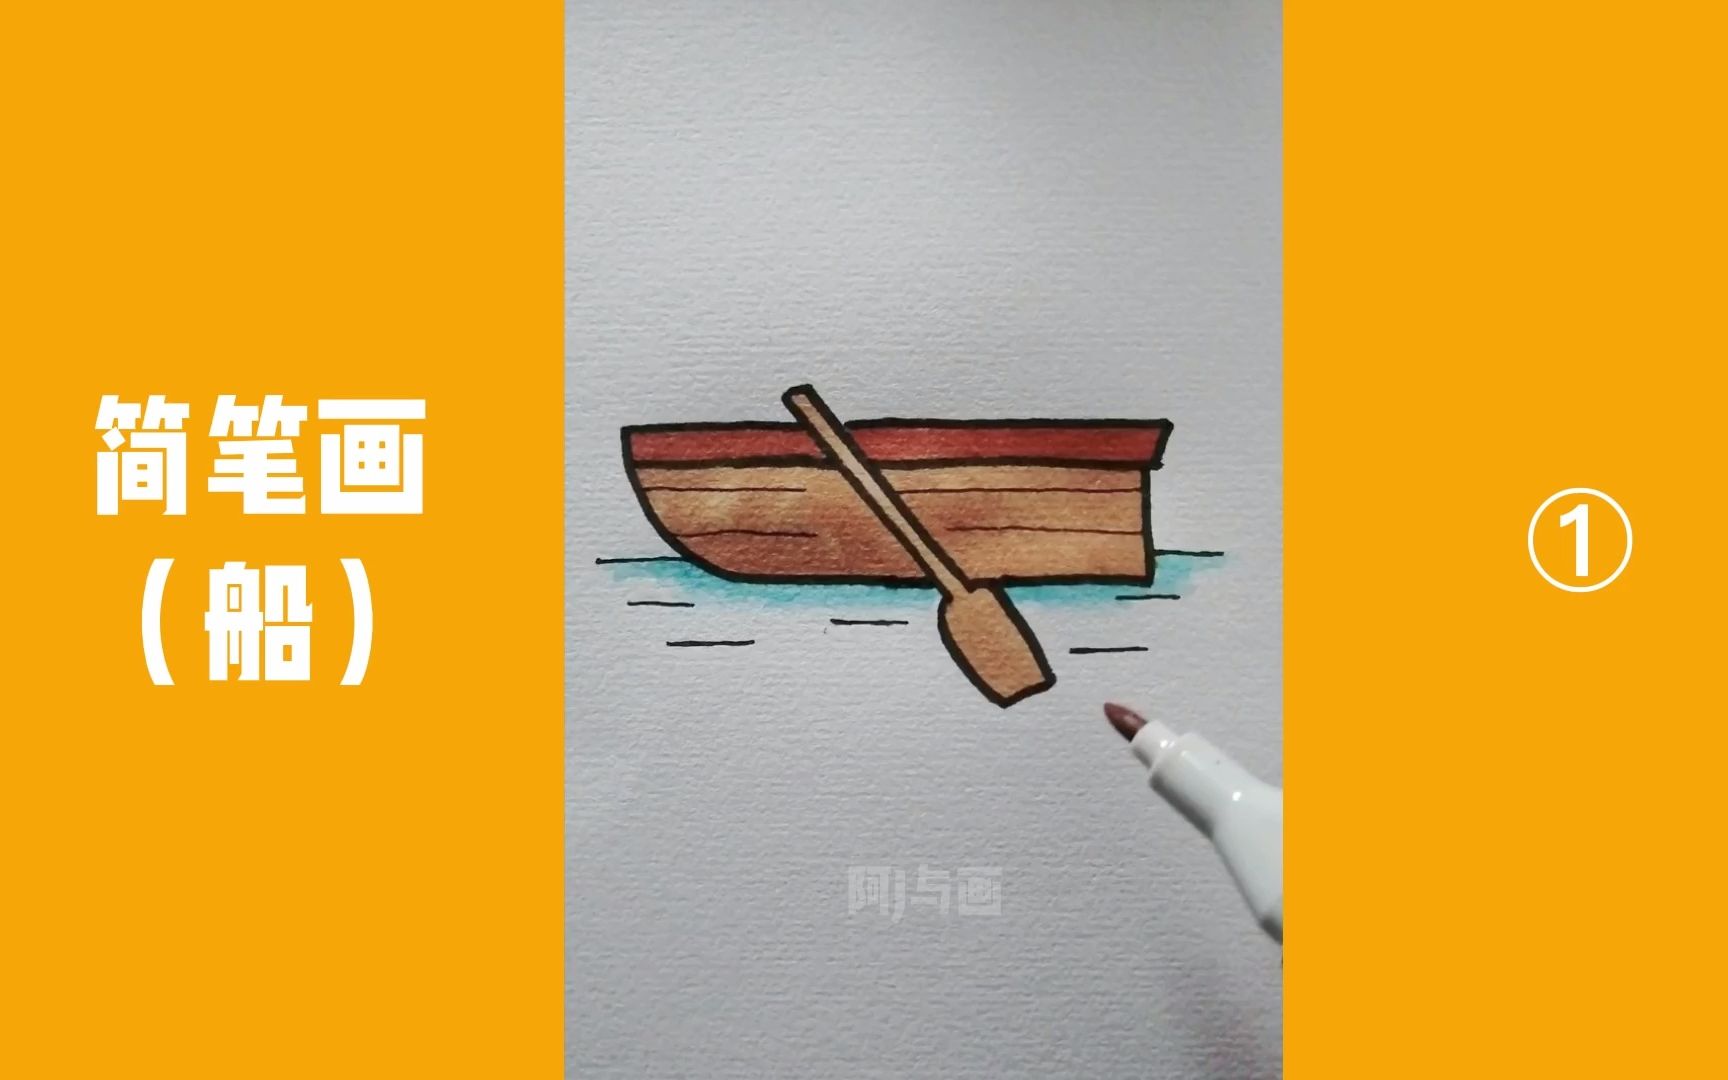 简单的小木船怎么画图片